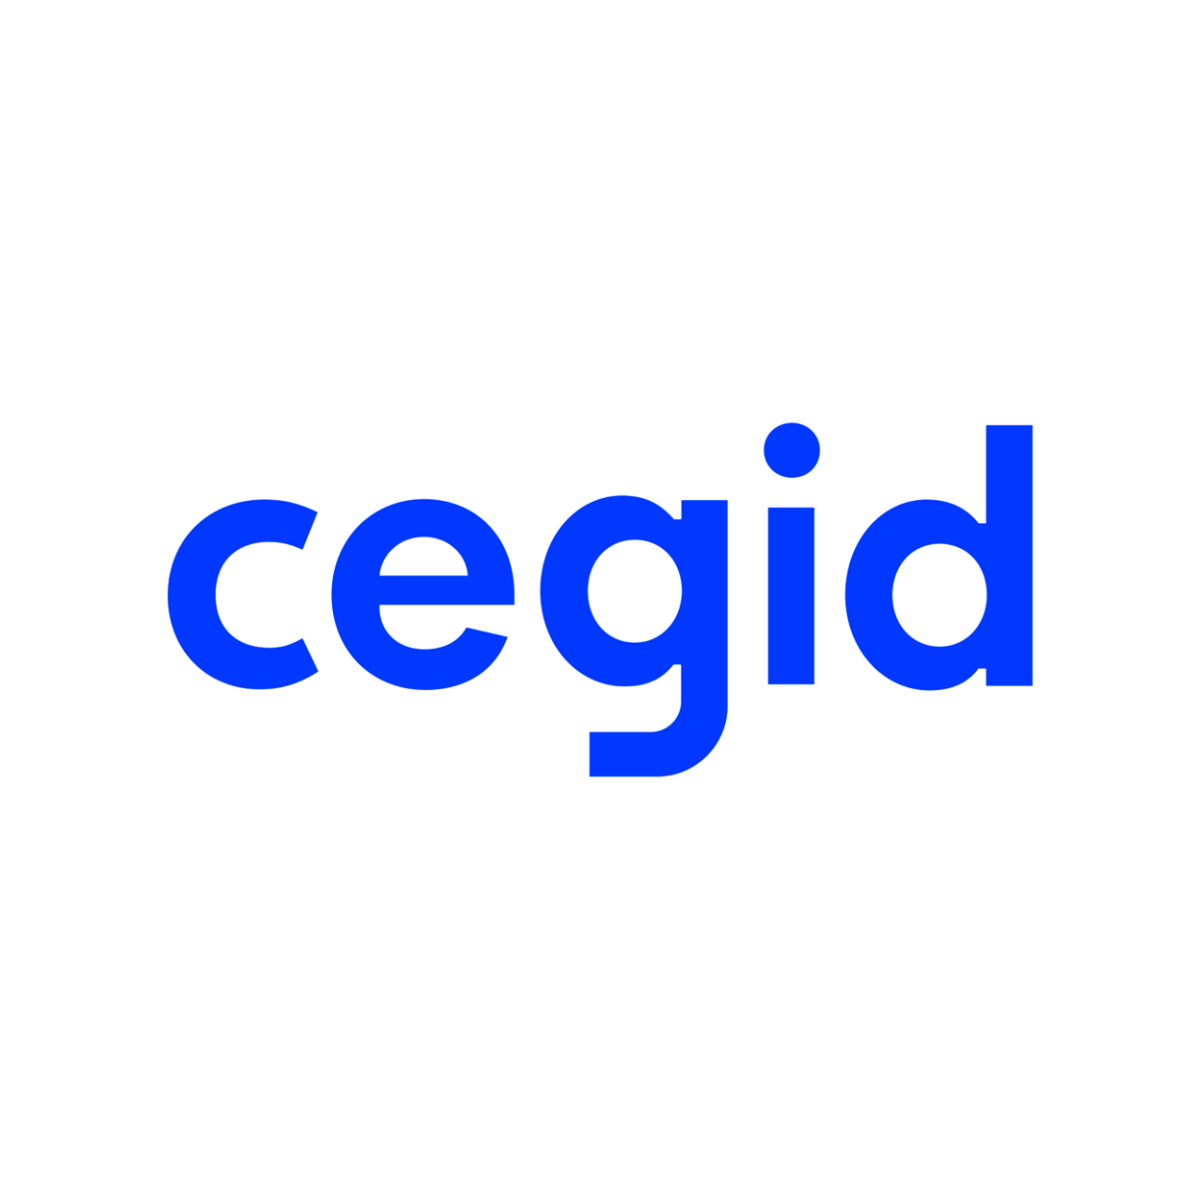 Le logo de Cegid est affiché ici pour mettre en avant son partenariat avec AKTISEA dans l'optimisation de la politique handicap de l'entreprise. Chez AKTISEA, entreprise adaptée, nous sommes engagés pour plus d'inclusion.